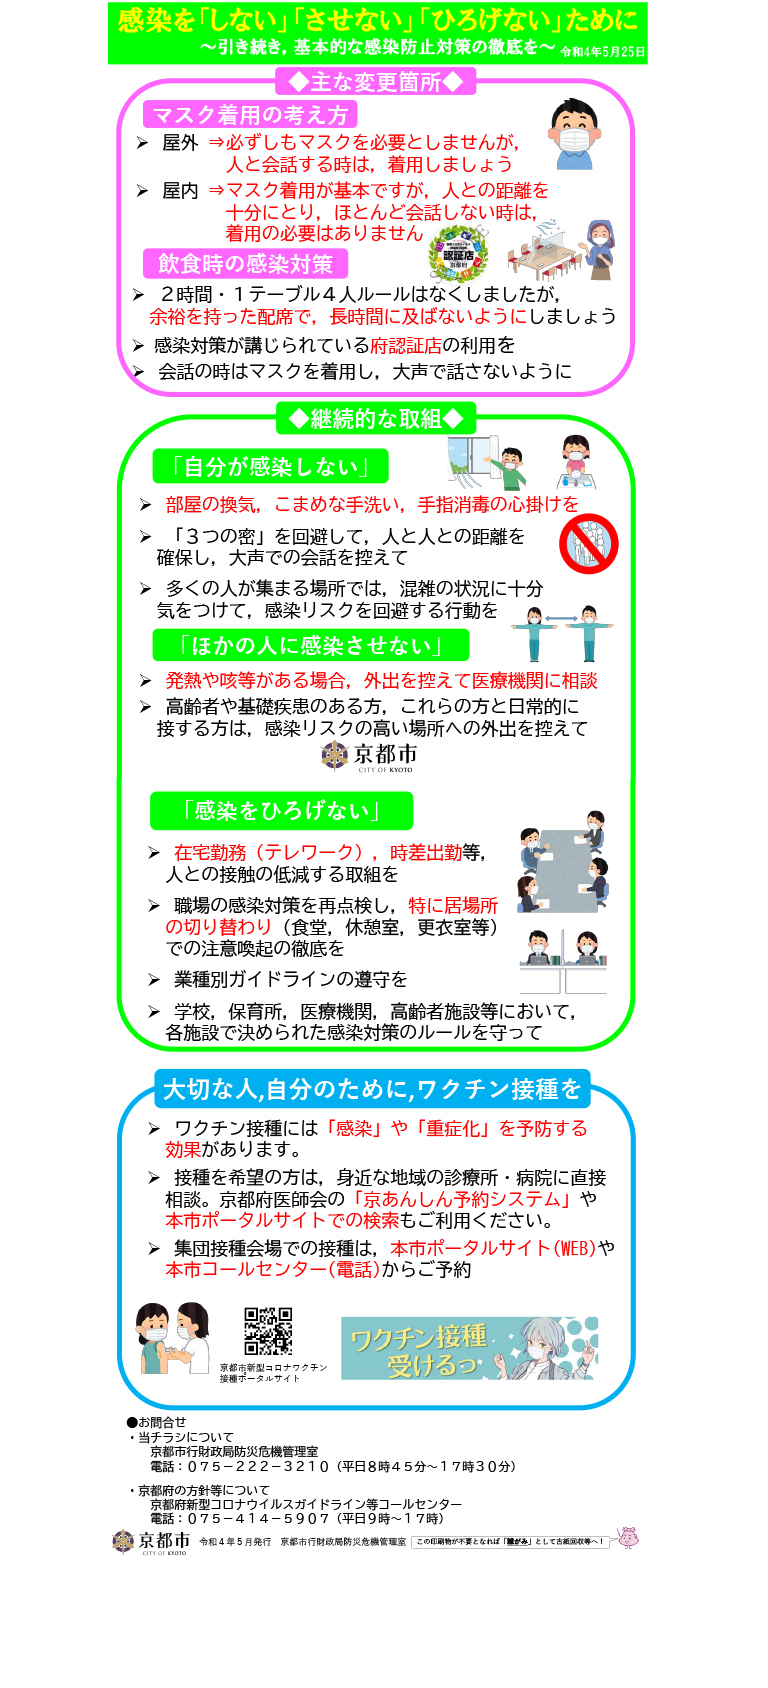 京都市新型コロナウイルス感染症対策本部会議